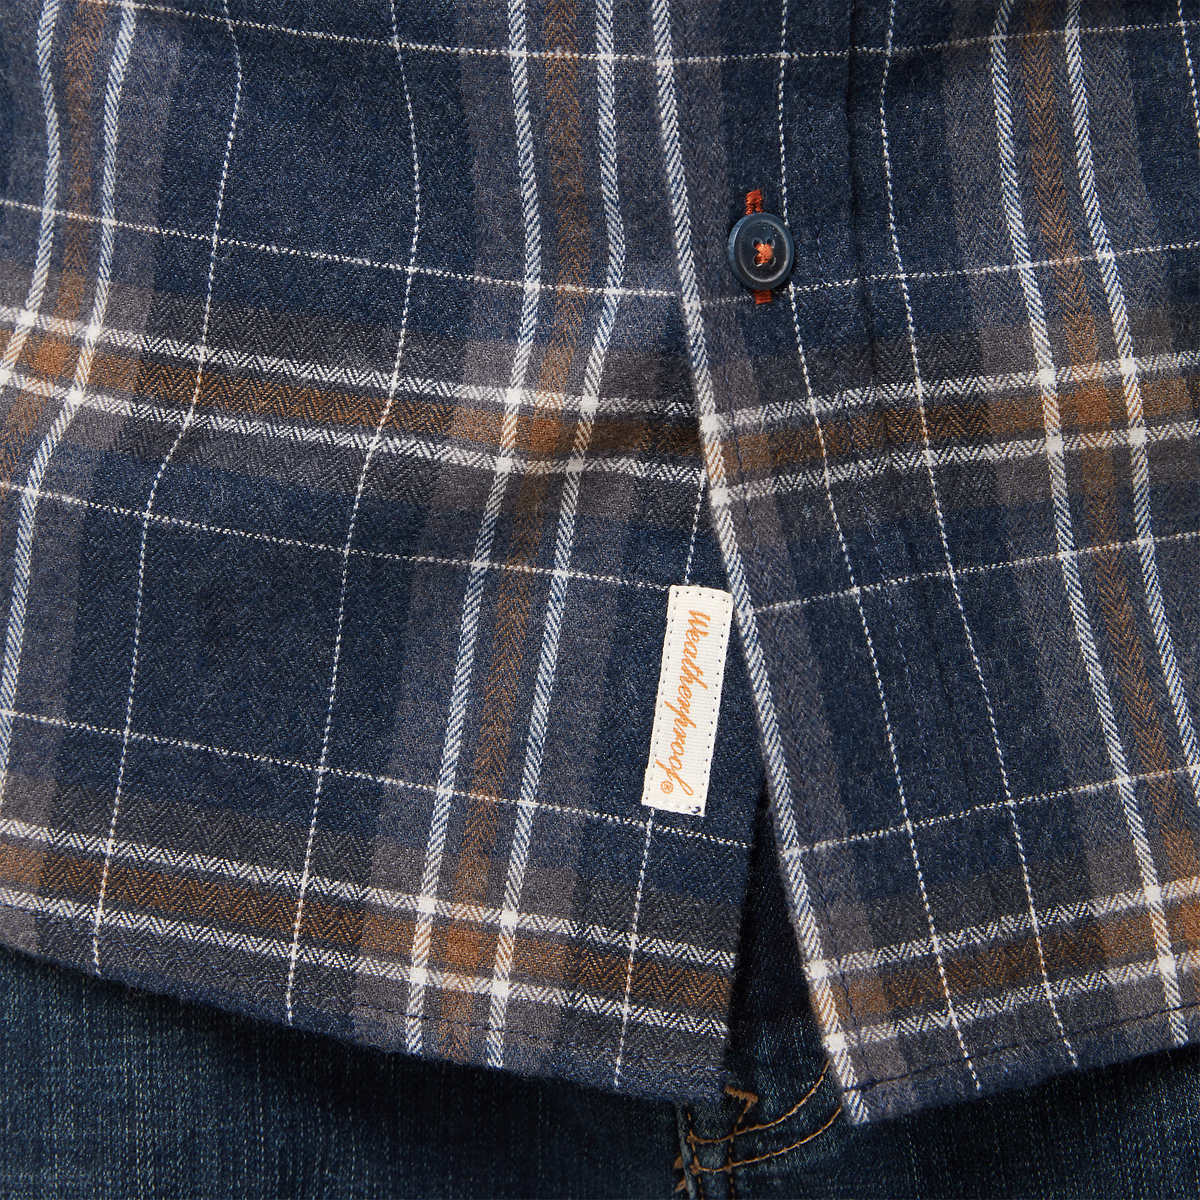 Weatherproof Vintage Men’s Cotton Blend Brushed Flannel Button Down Plaid Shirt